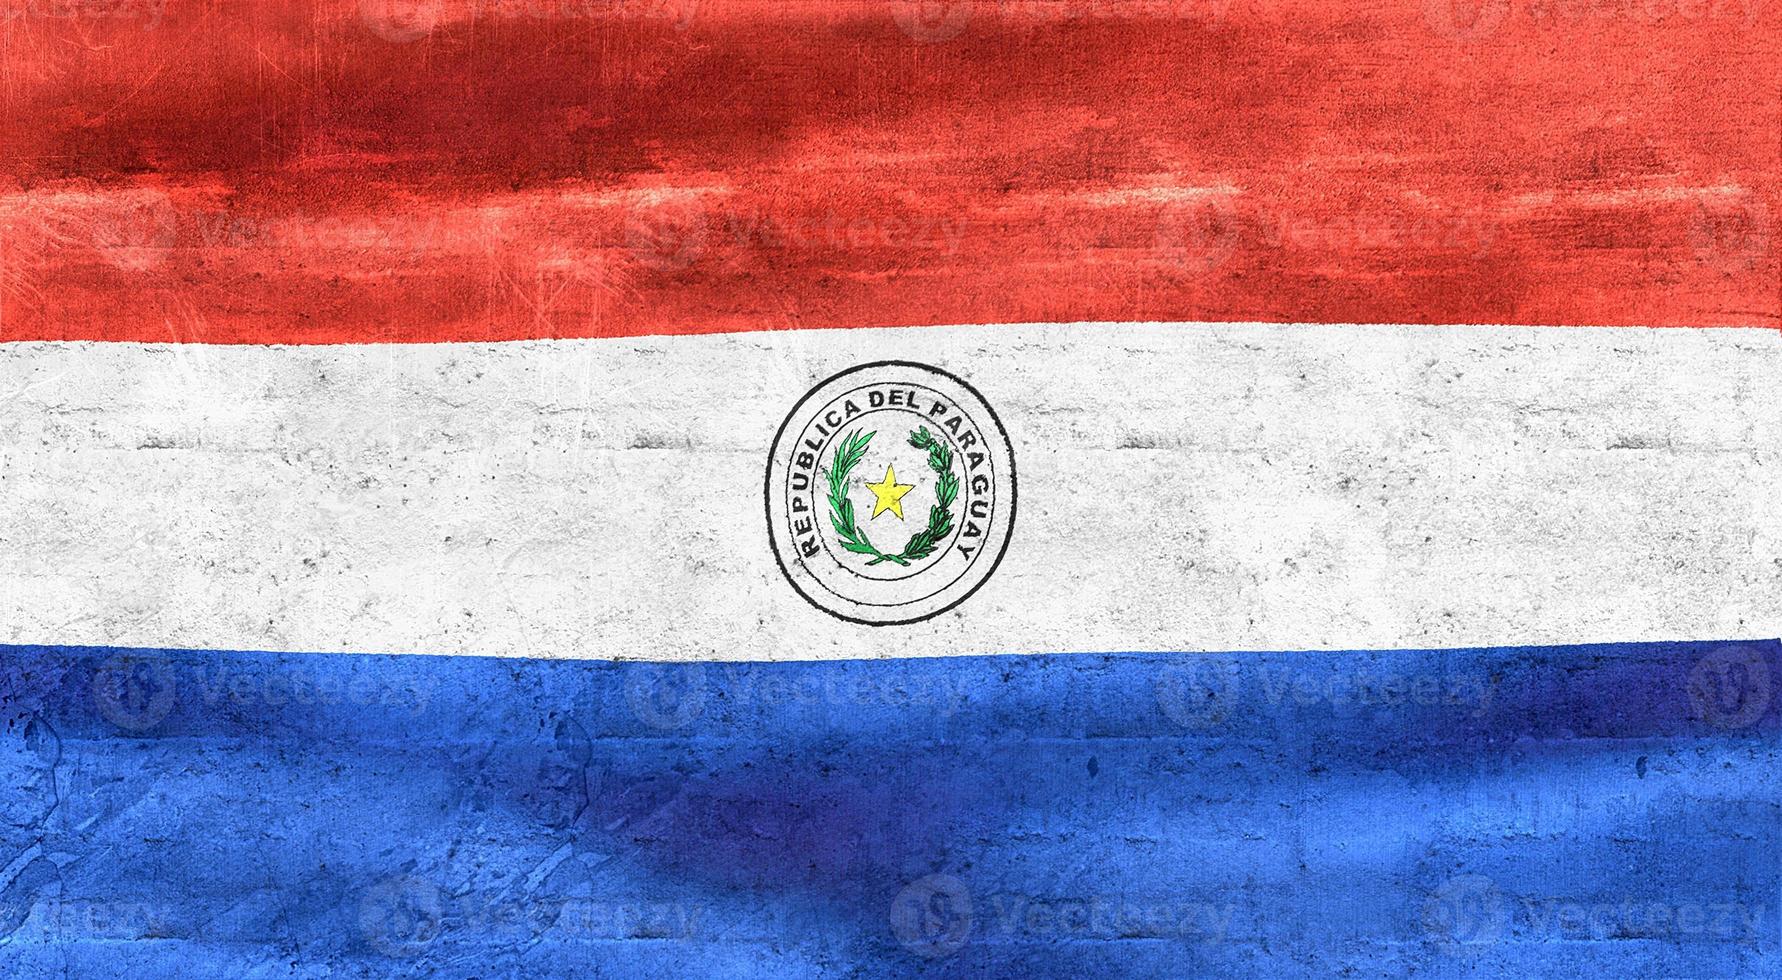 3D-illustration av en paraguay flagga - realistiska viftande tyg flagga foto